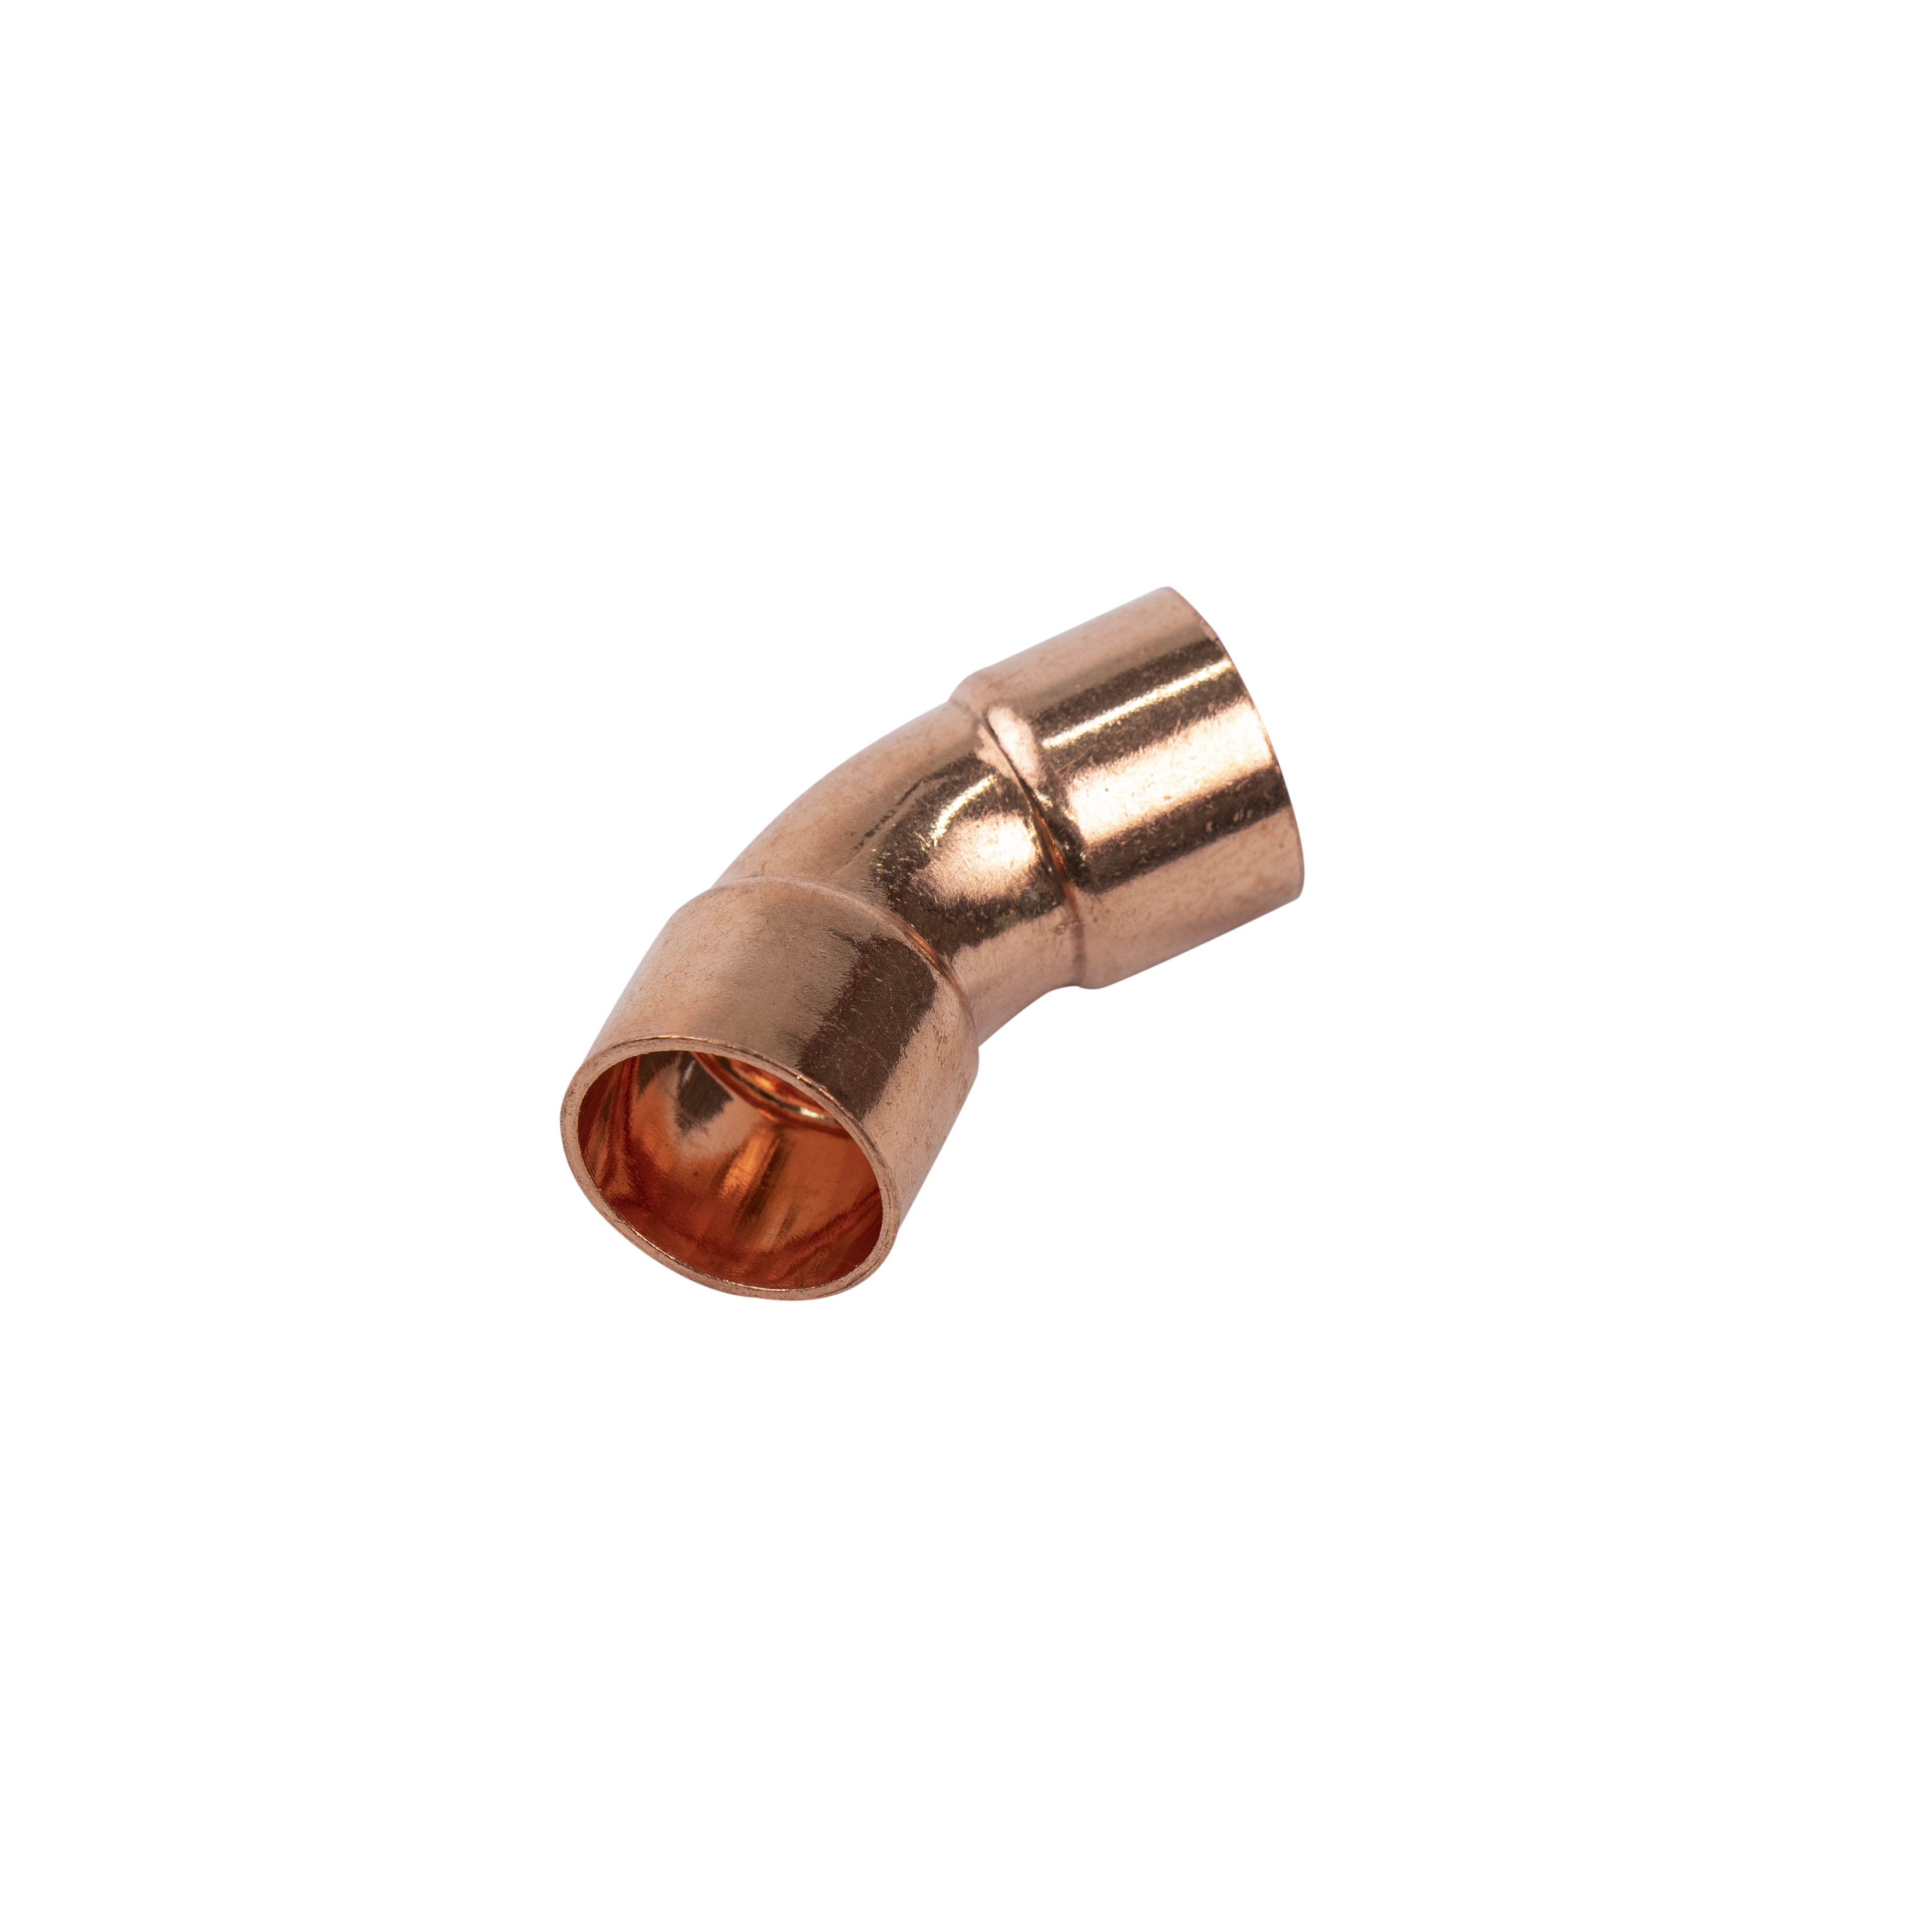 1 Inch Copper Elbow 45° Deg R410a